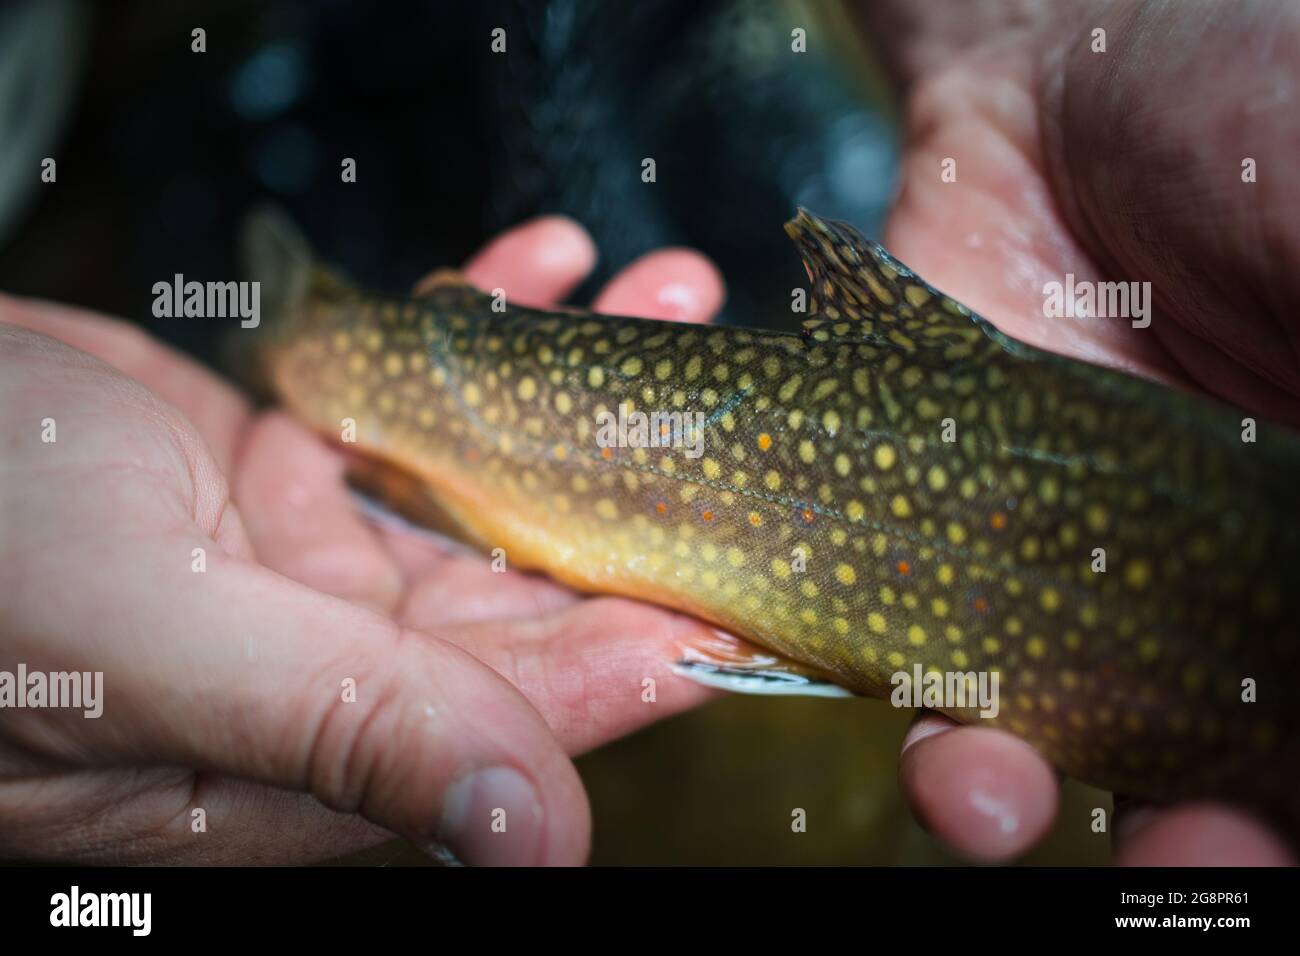 Halten einer Brook Forelle: Gefangen Fliegenfischen, bald veröffentlicht werden! Stockfoto